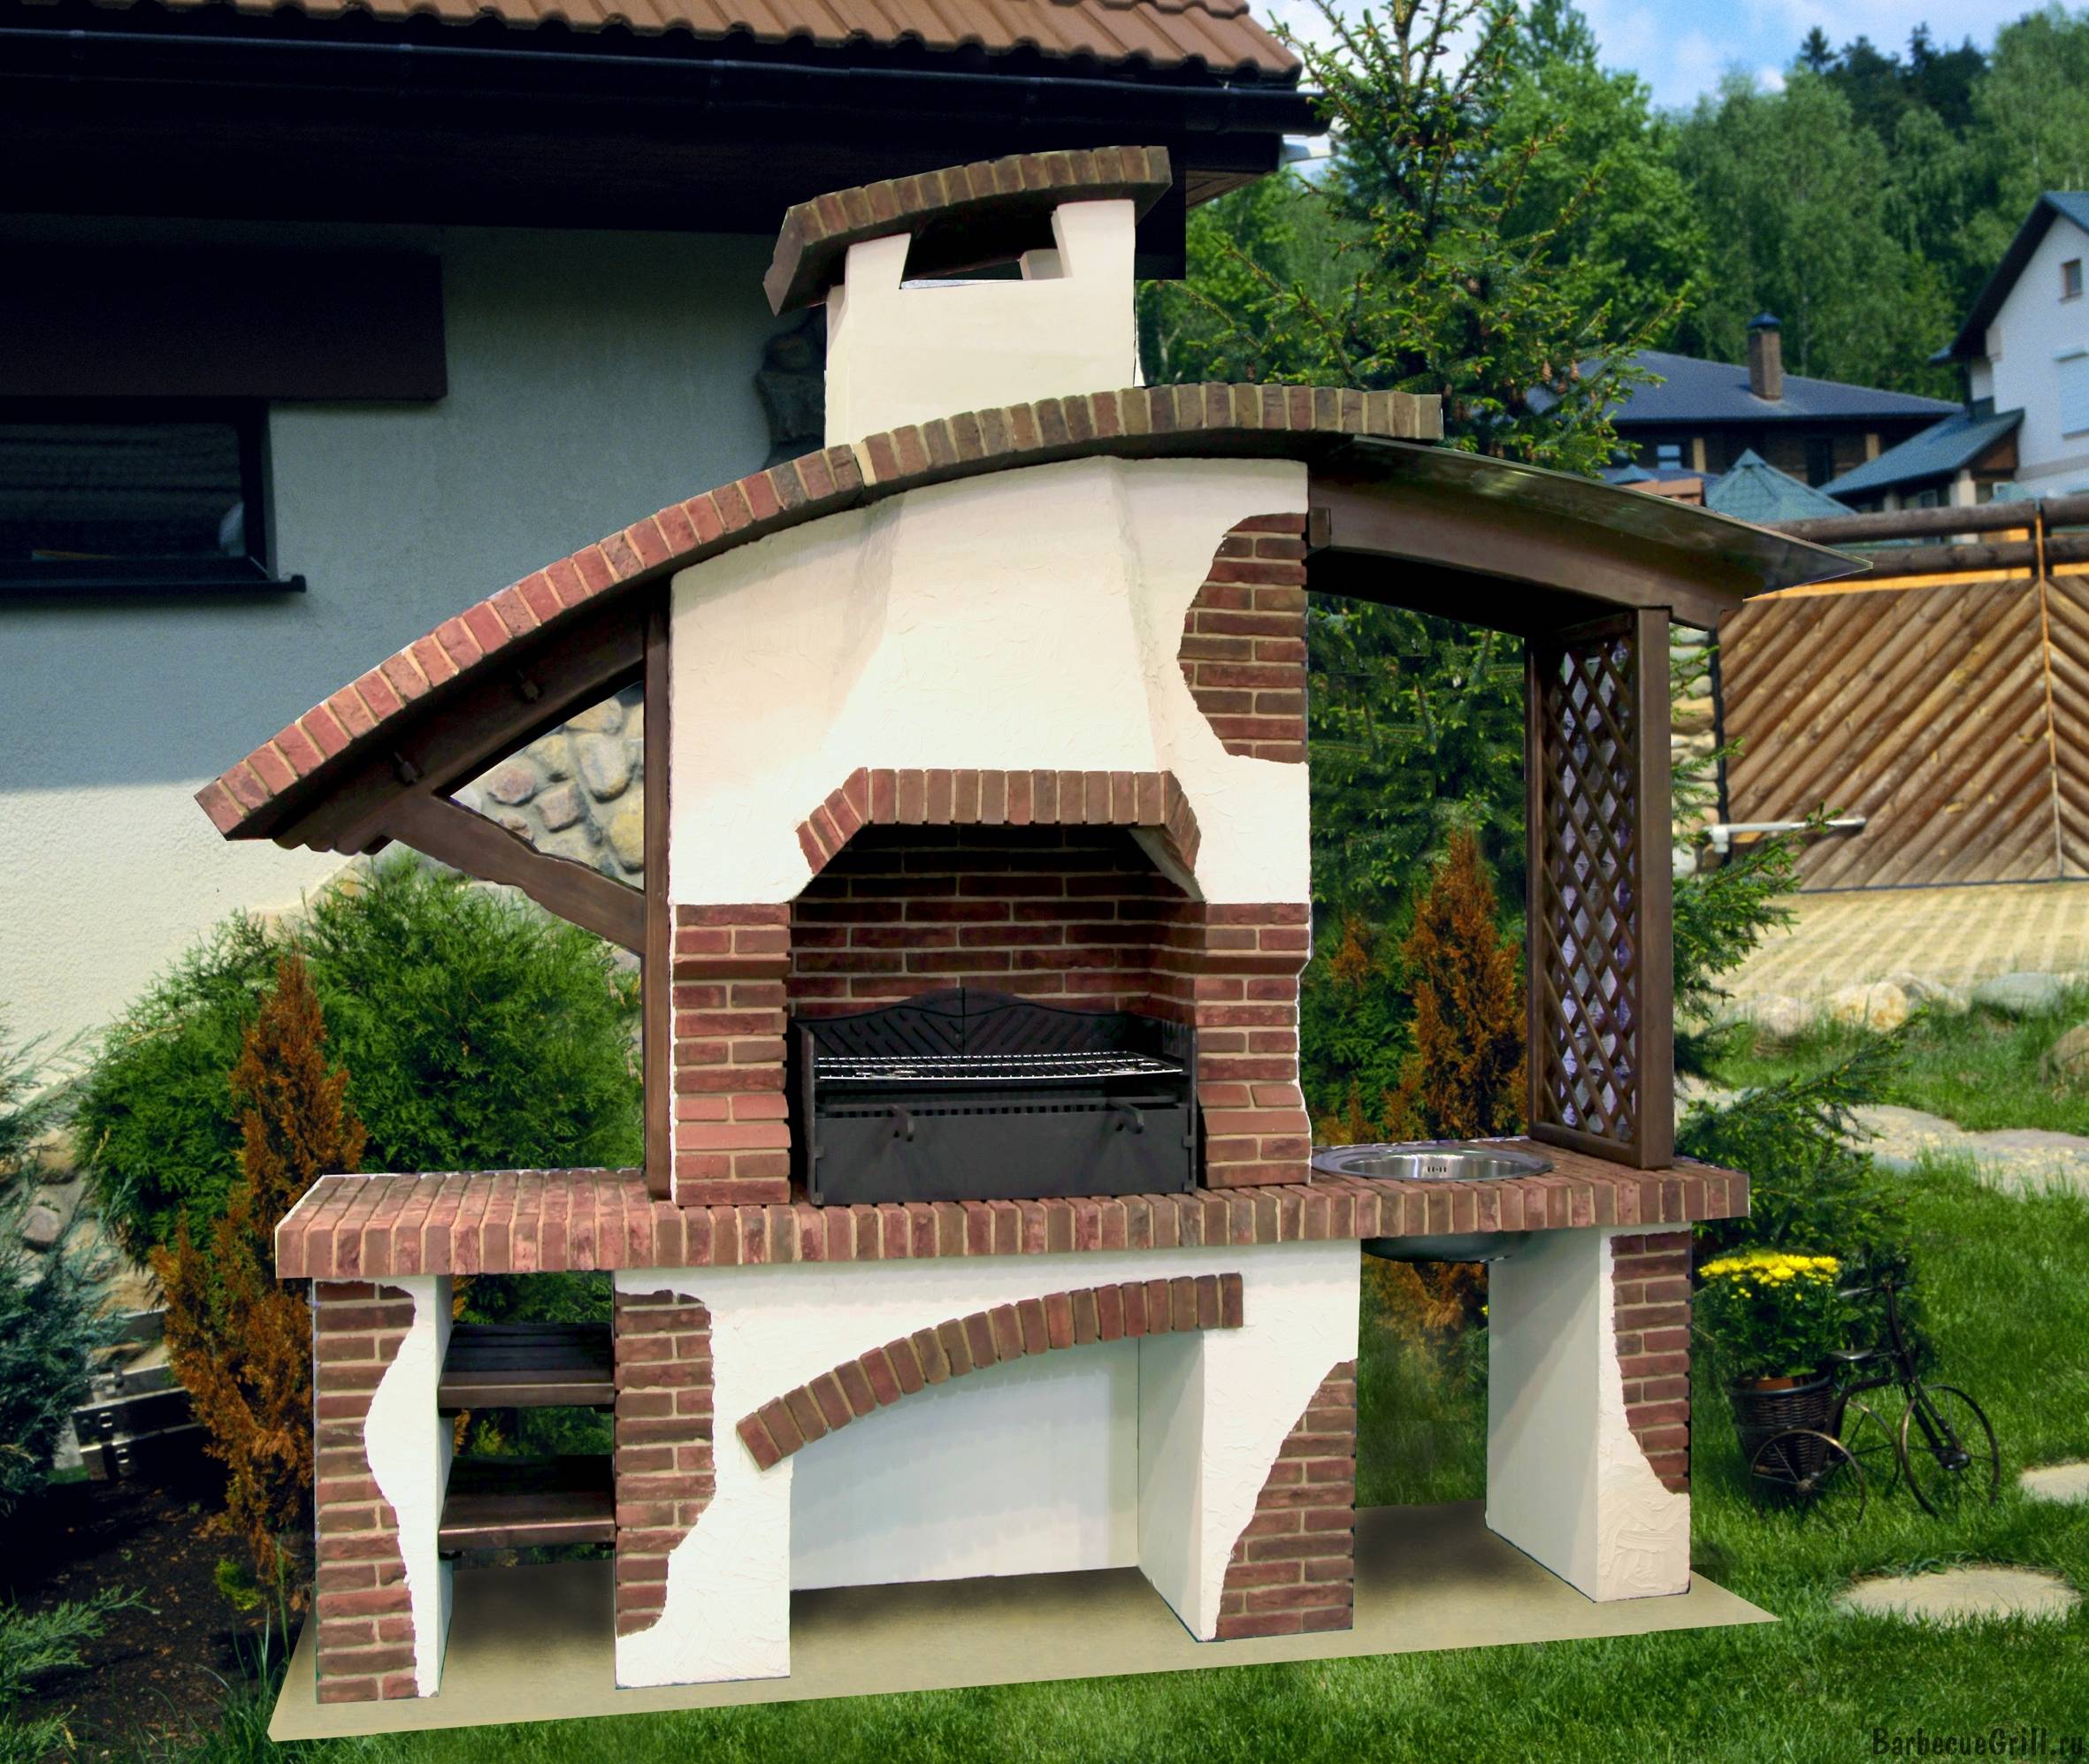 Барбекю своими руками: как сделать уличную печь из кирпича на даче, её строительство во дворе, самый лучший тип садовой постройки